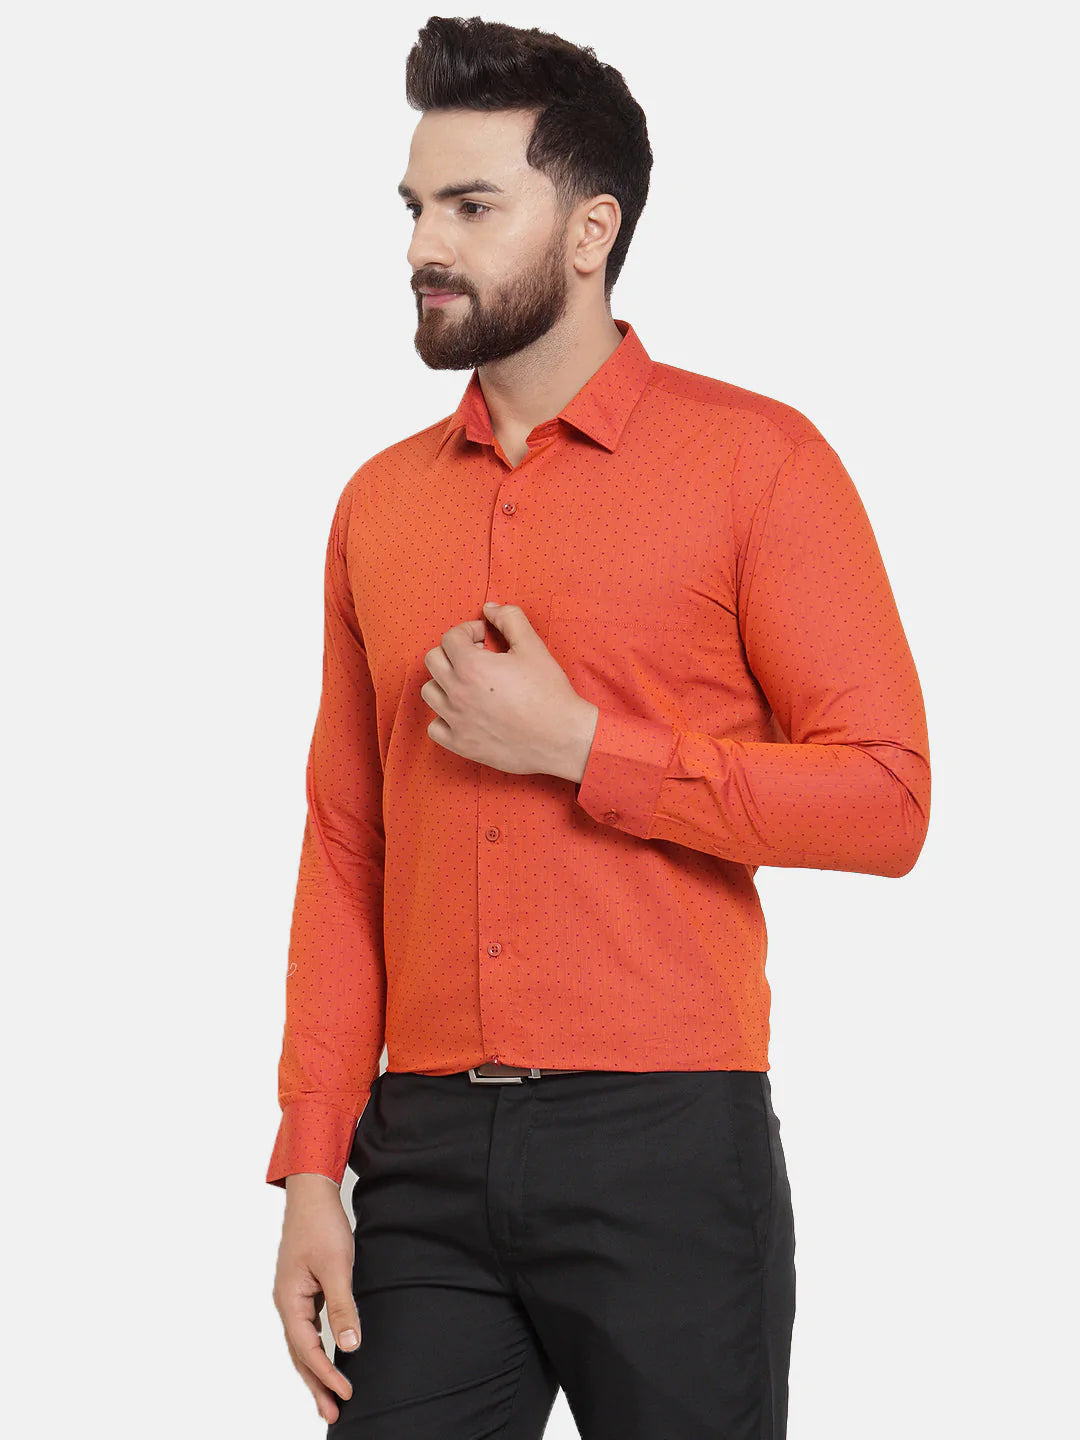 Jainish Orange Men's Cotton Polka Dots Formal Shirts ( SF 739Orange )